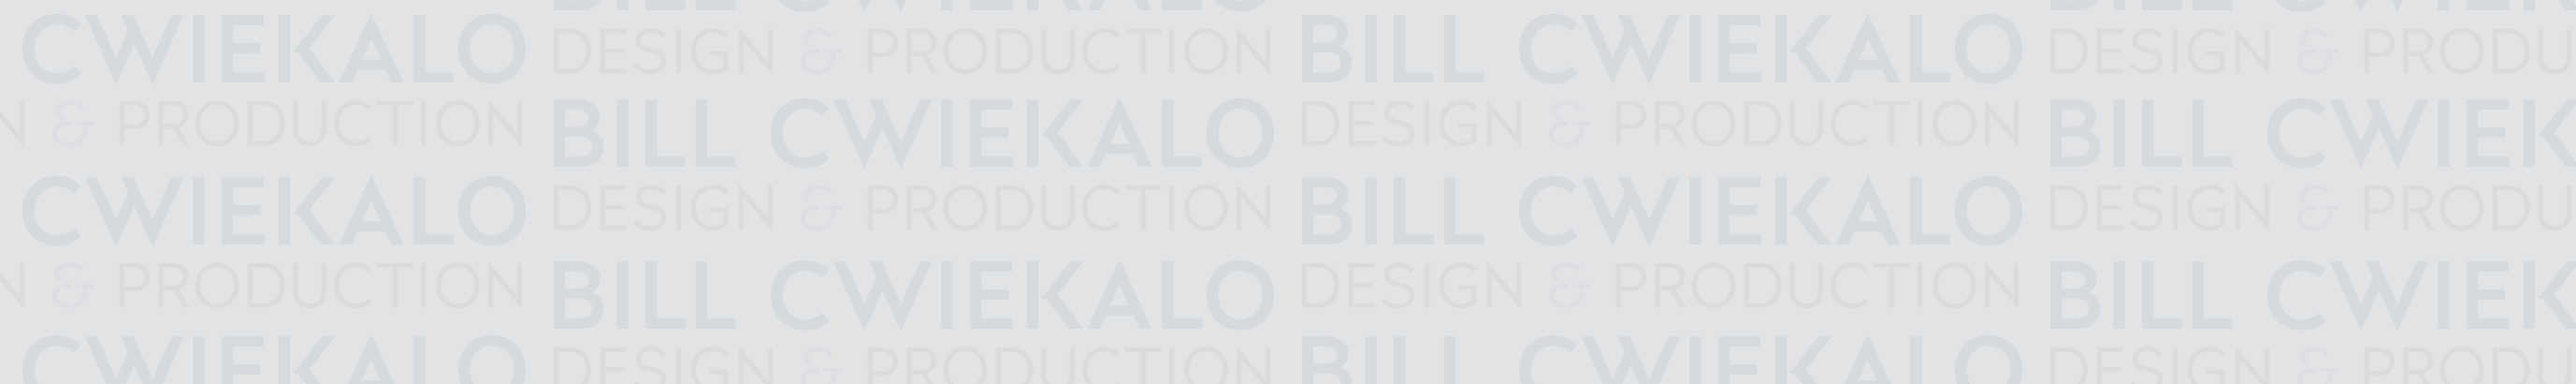 Bill Cwiekalo's profile banner